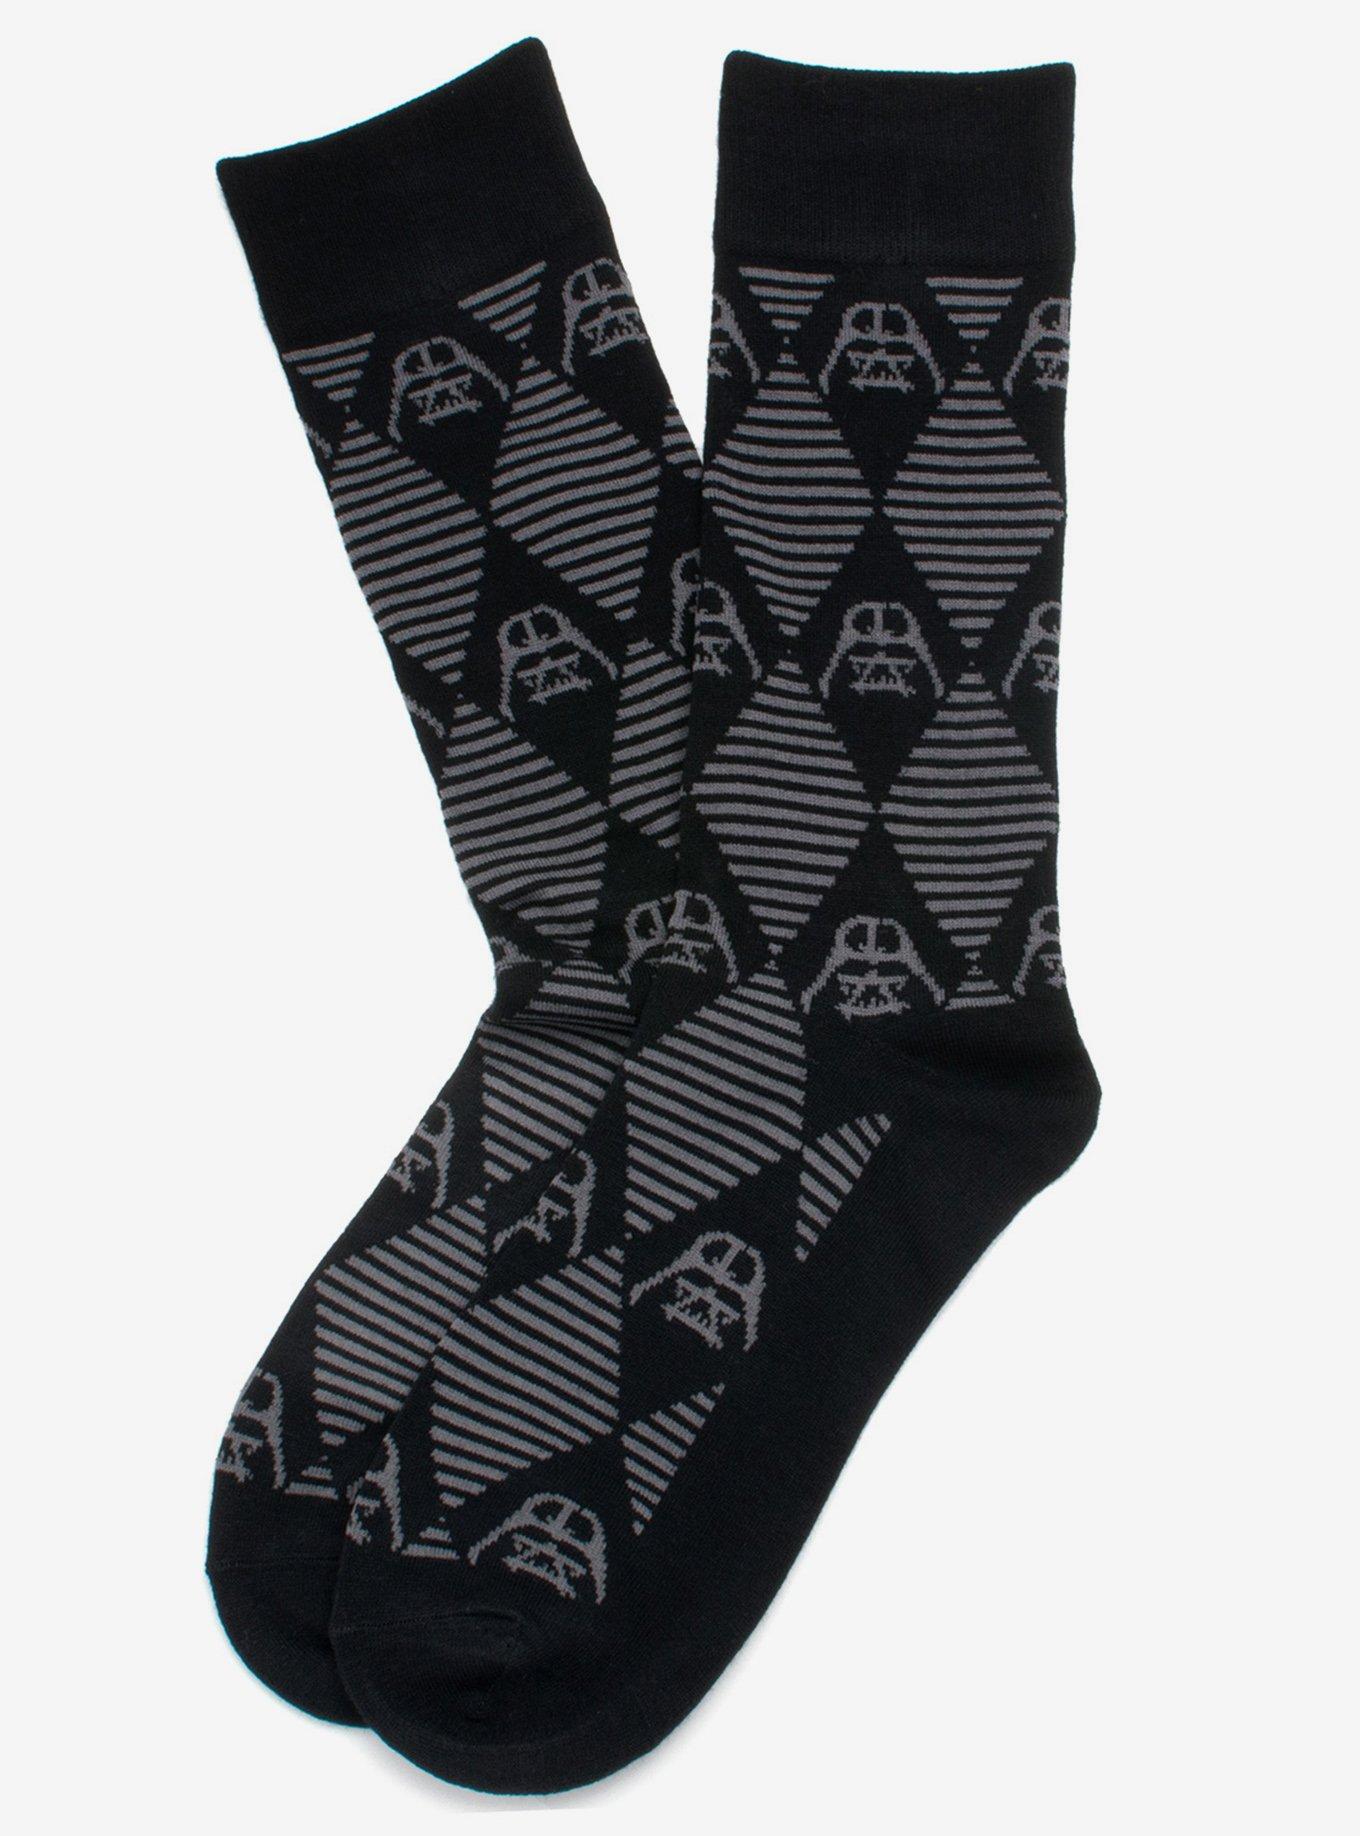 Star Wars Striped 3 Pair Socks Gift Set, , alternate